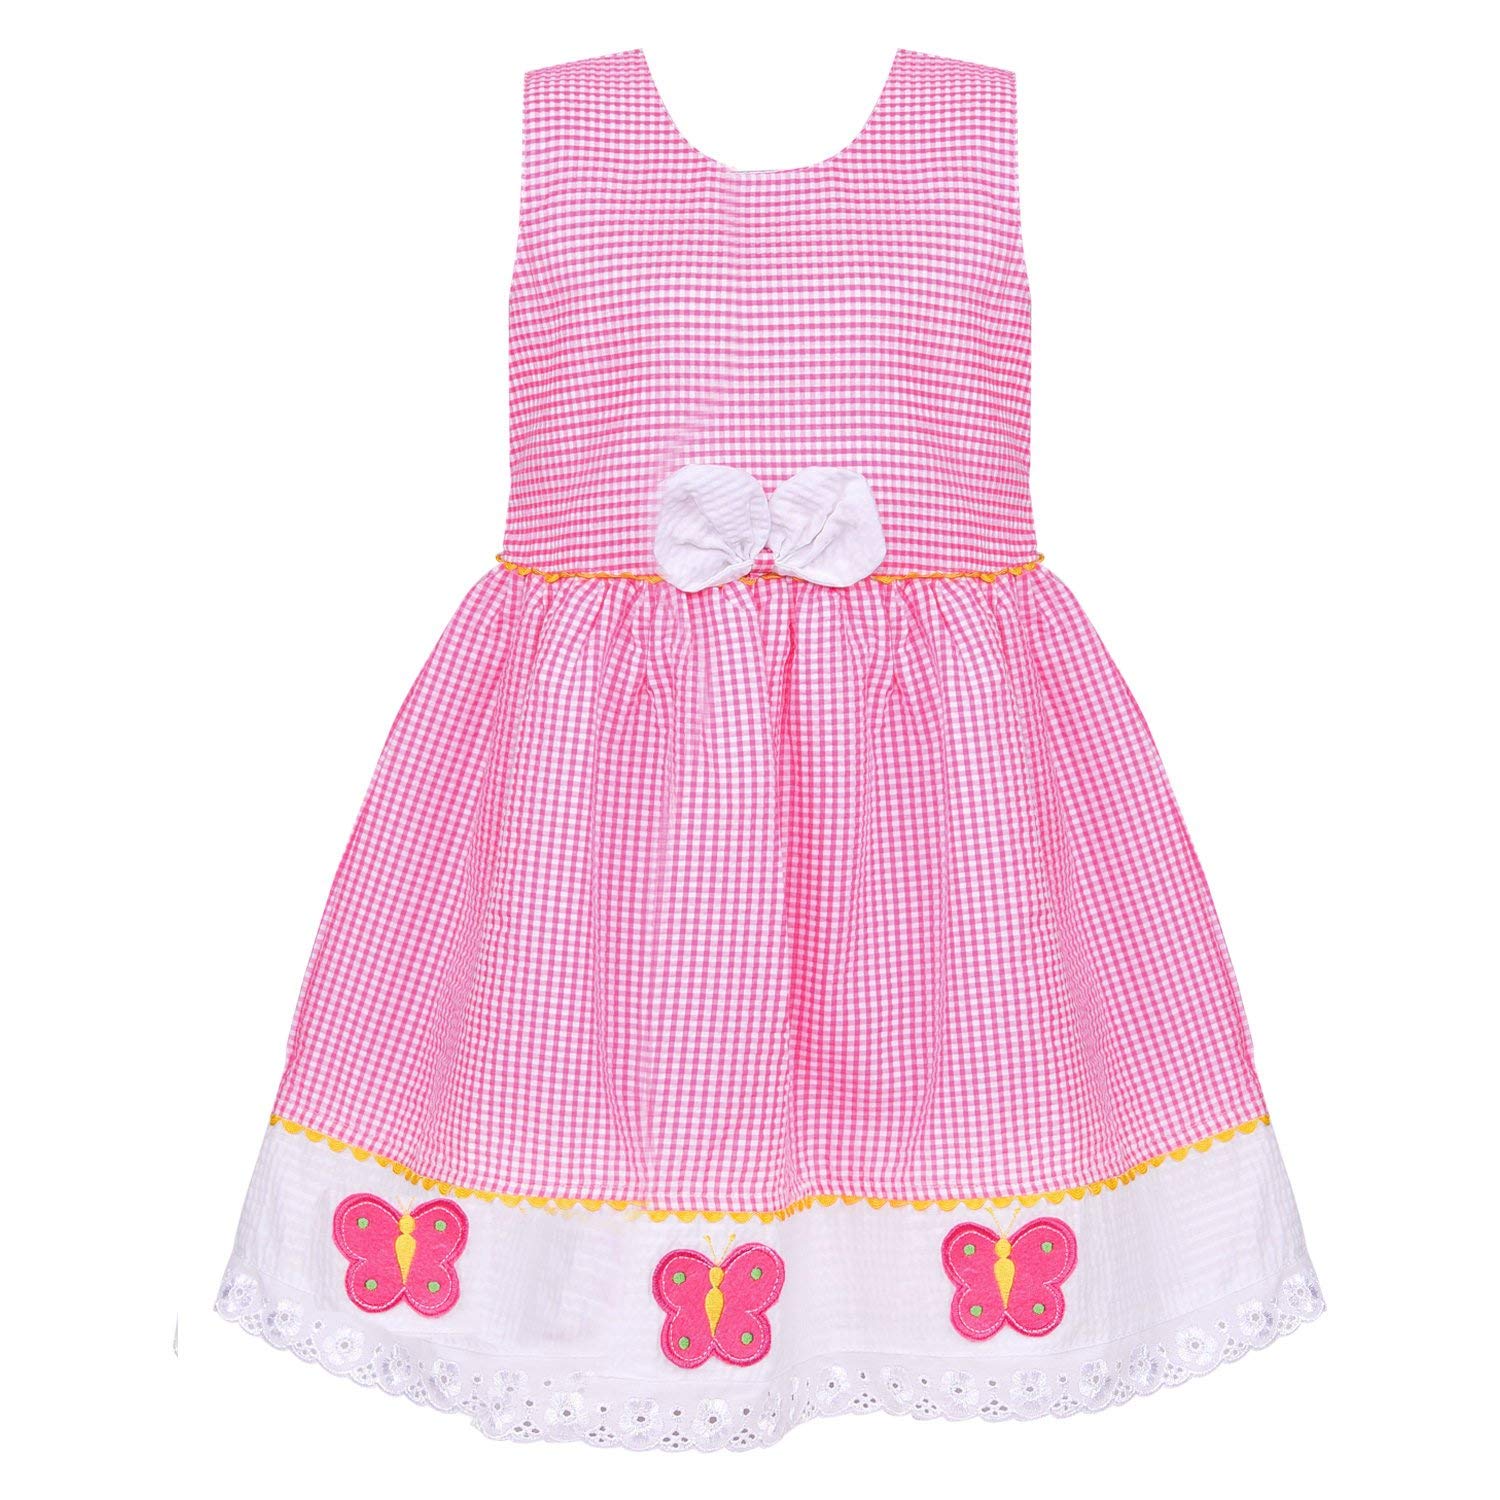 Baby Girls Cotton Frock Dress Ctn272P - Wish Karo Cotton Wear - frocks Cotton Wear - baby dress